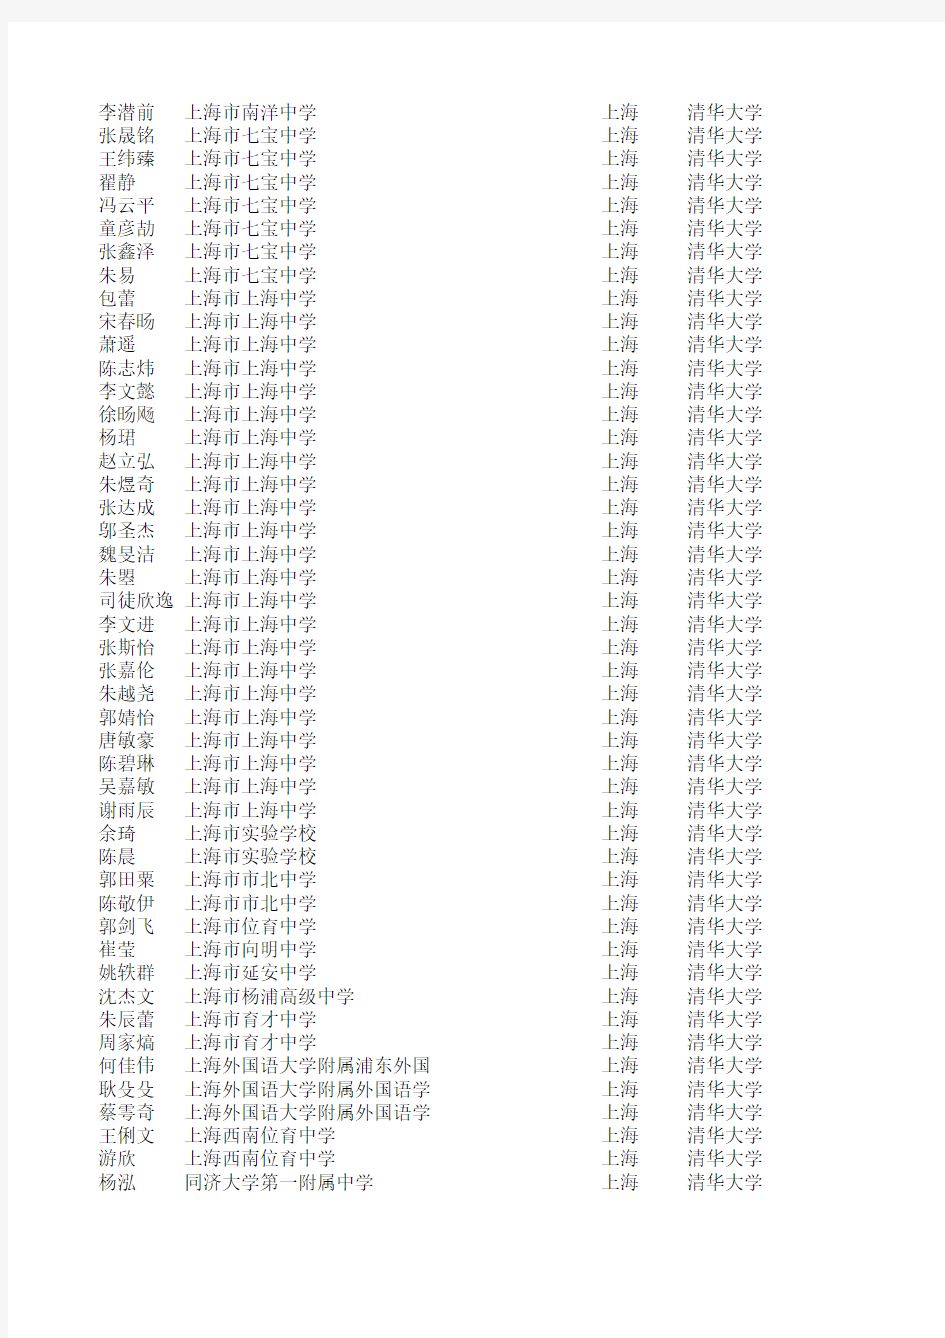 2010年清华大学自主招生录取名单(上海考生)